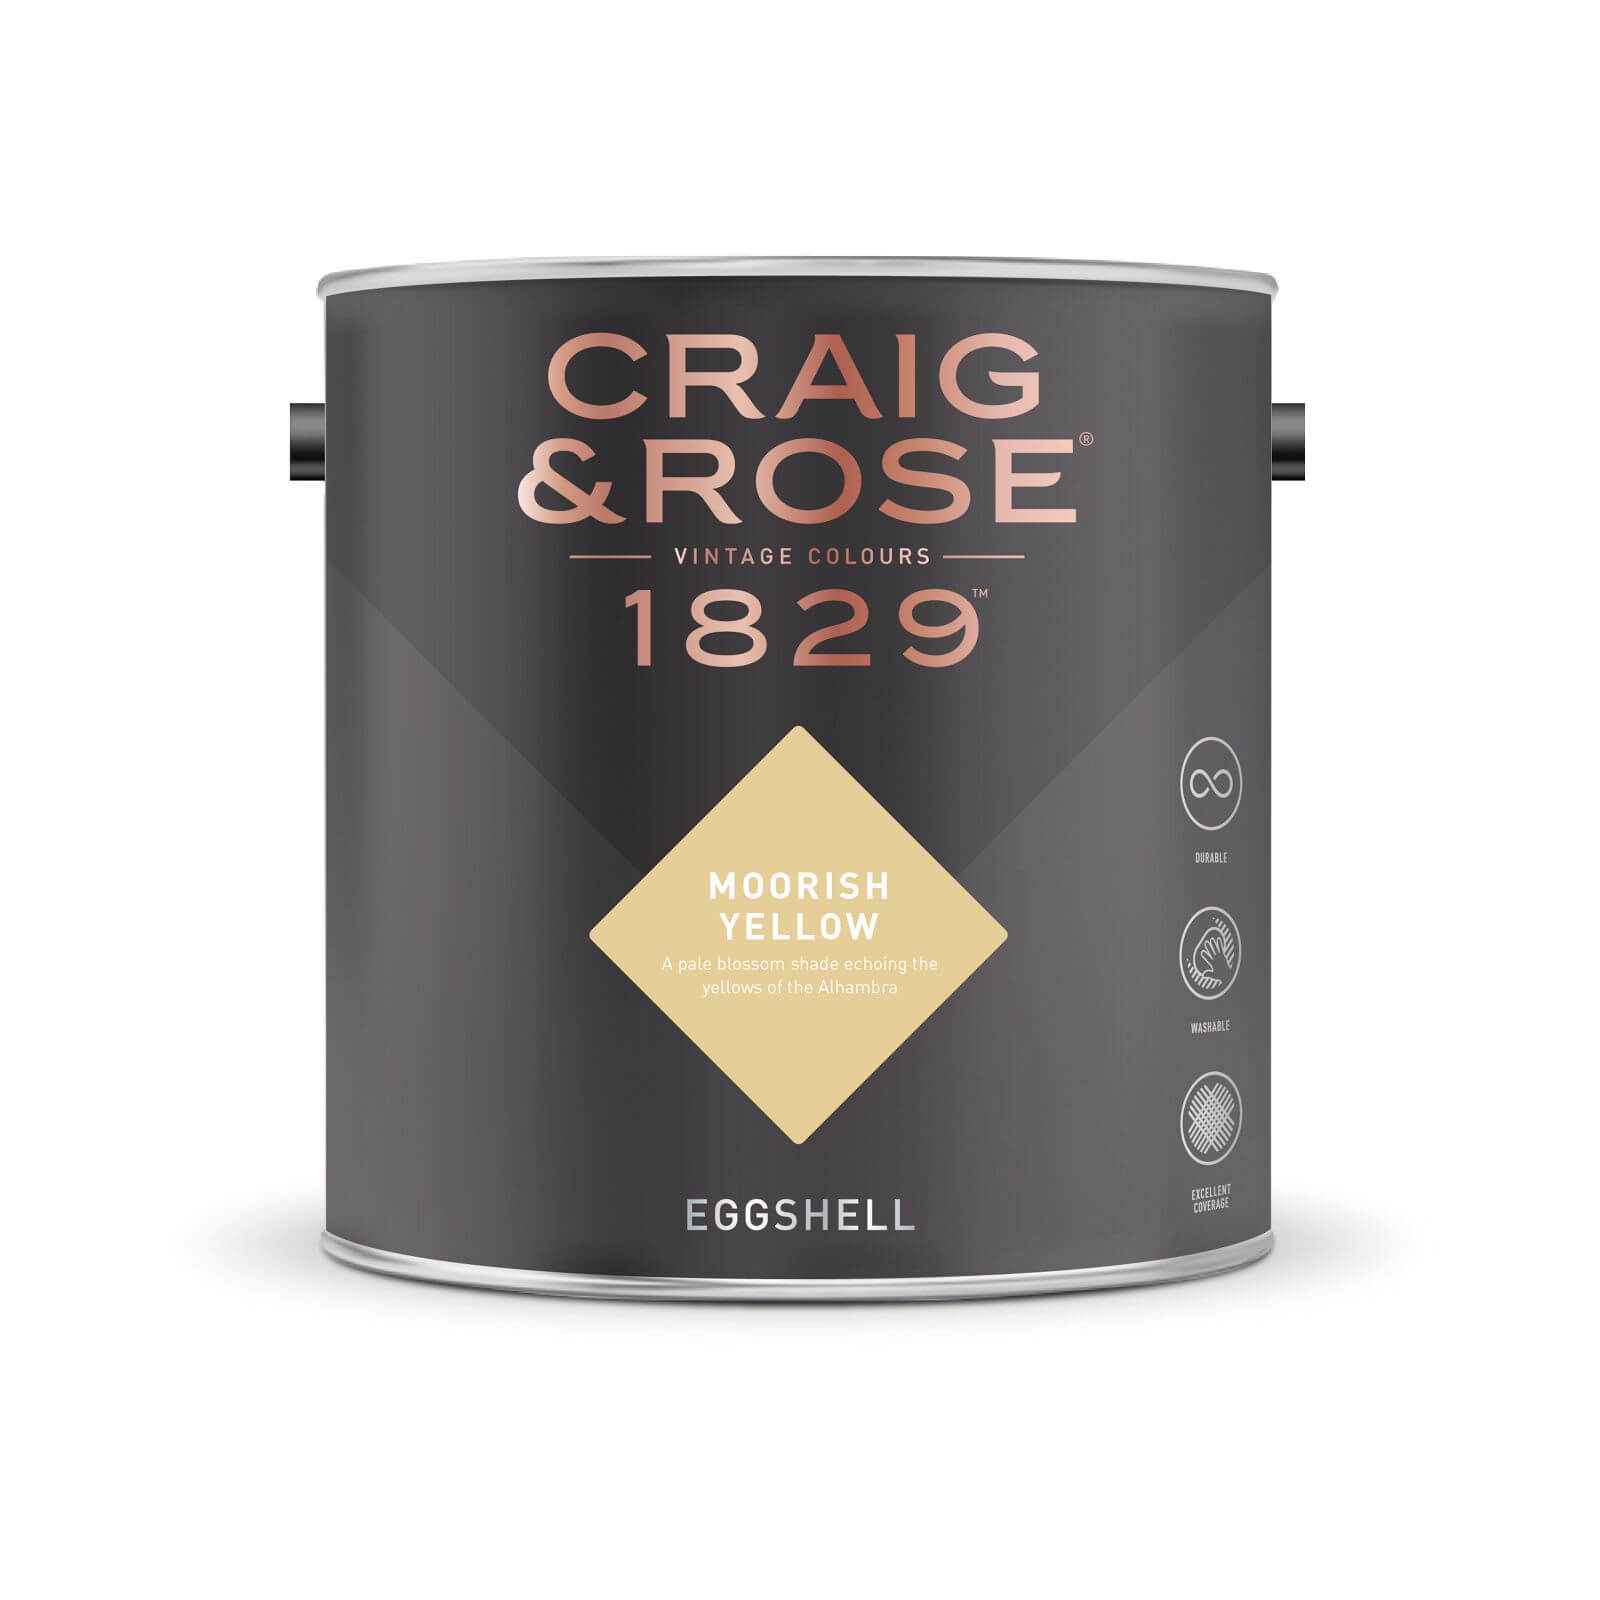 Craig & Rose 1829 Eggshell Paint Moorish Yellow - 2.5L